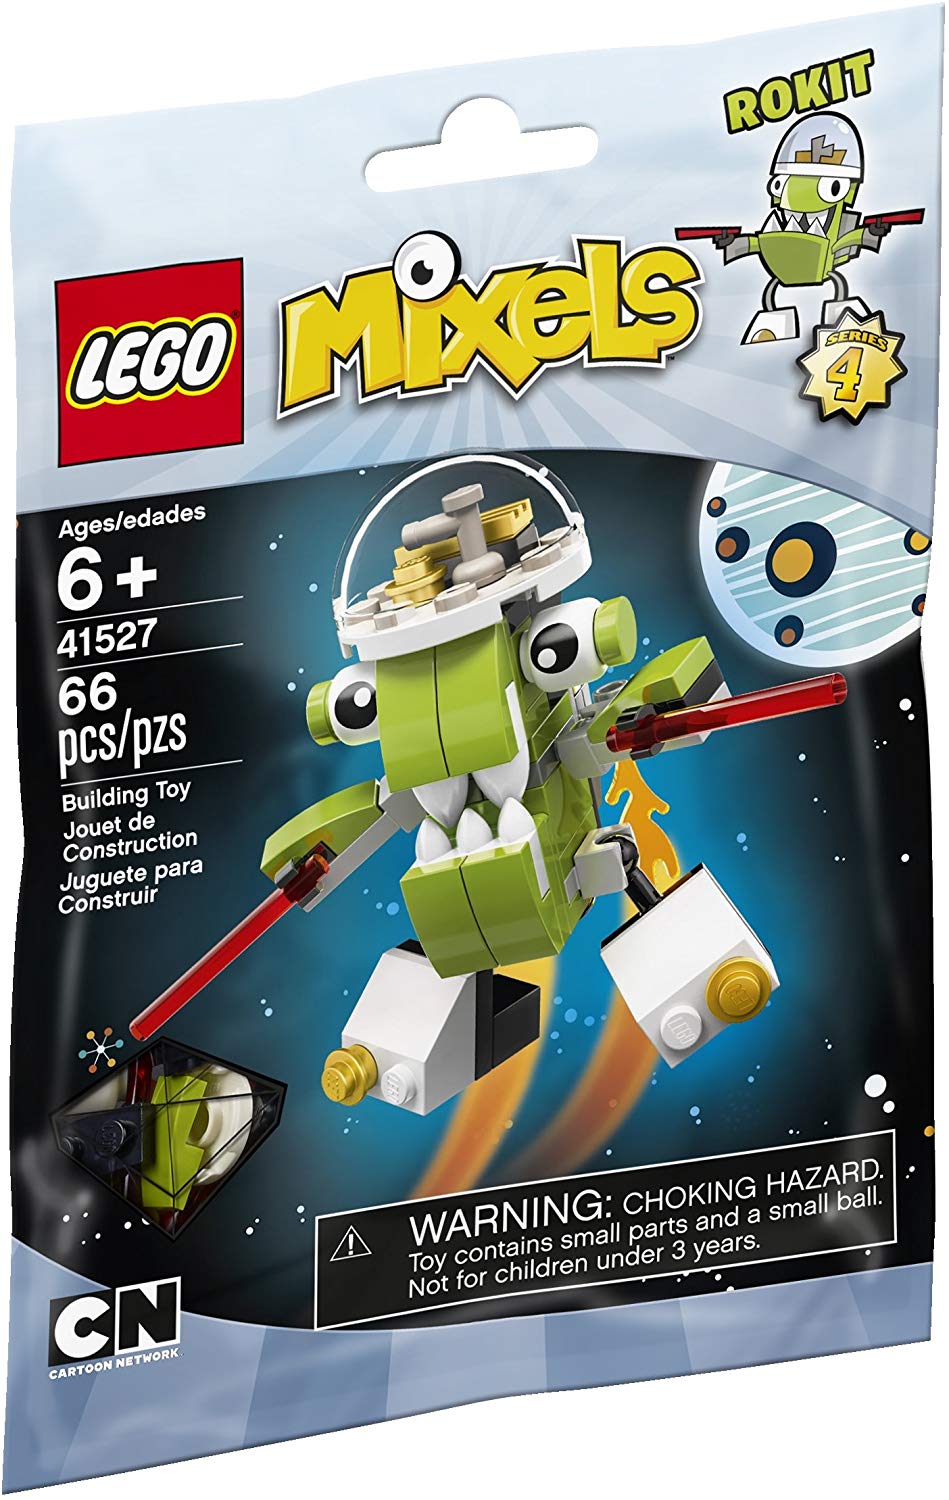 Lego Mixels 41527 Rokit Building Kit By Lego Mixels